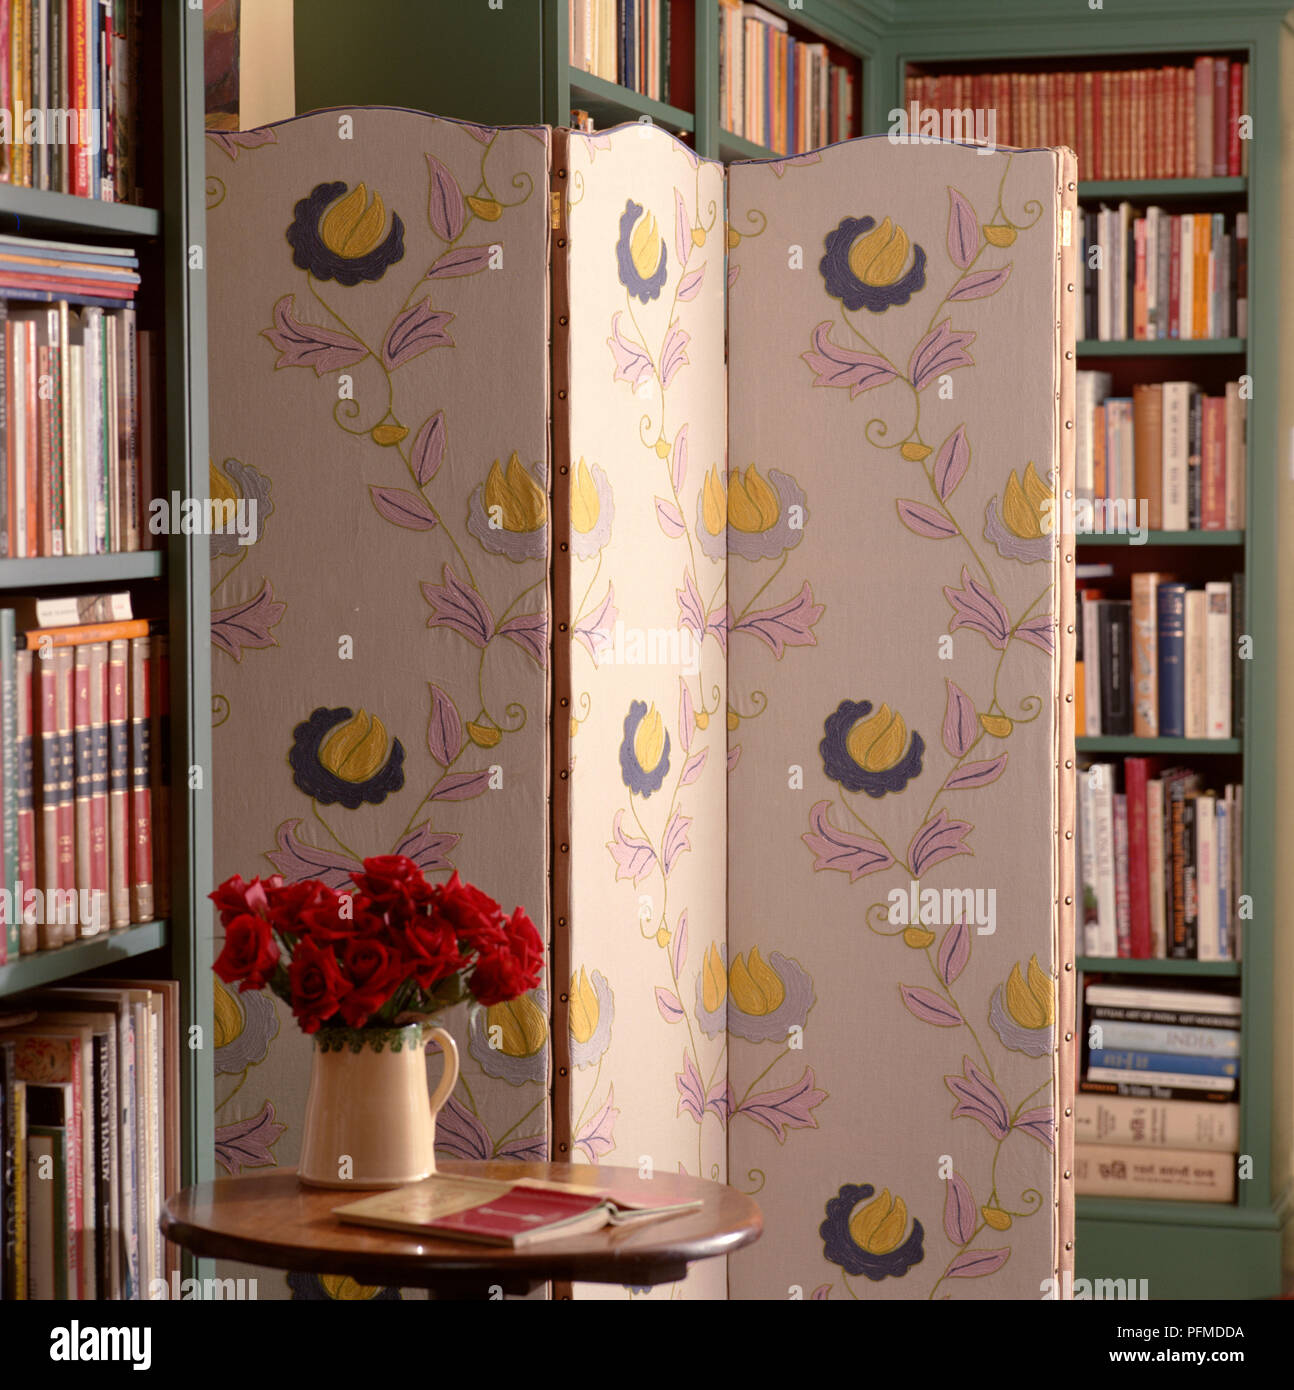 Gemusterten Stoff Bildschirm stehen im Zimmer voller Bücher, Holztisch mit einer Vase mit Rosen im Vordergrund, hohen Bücherregale im Hintergrund. Stockfoto